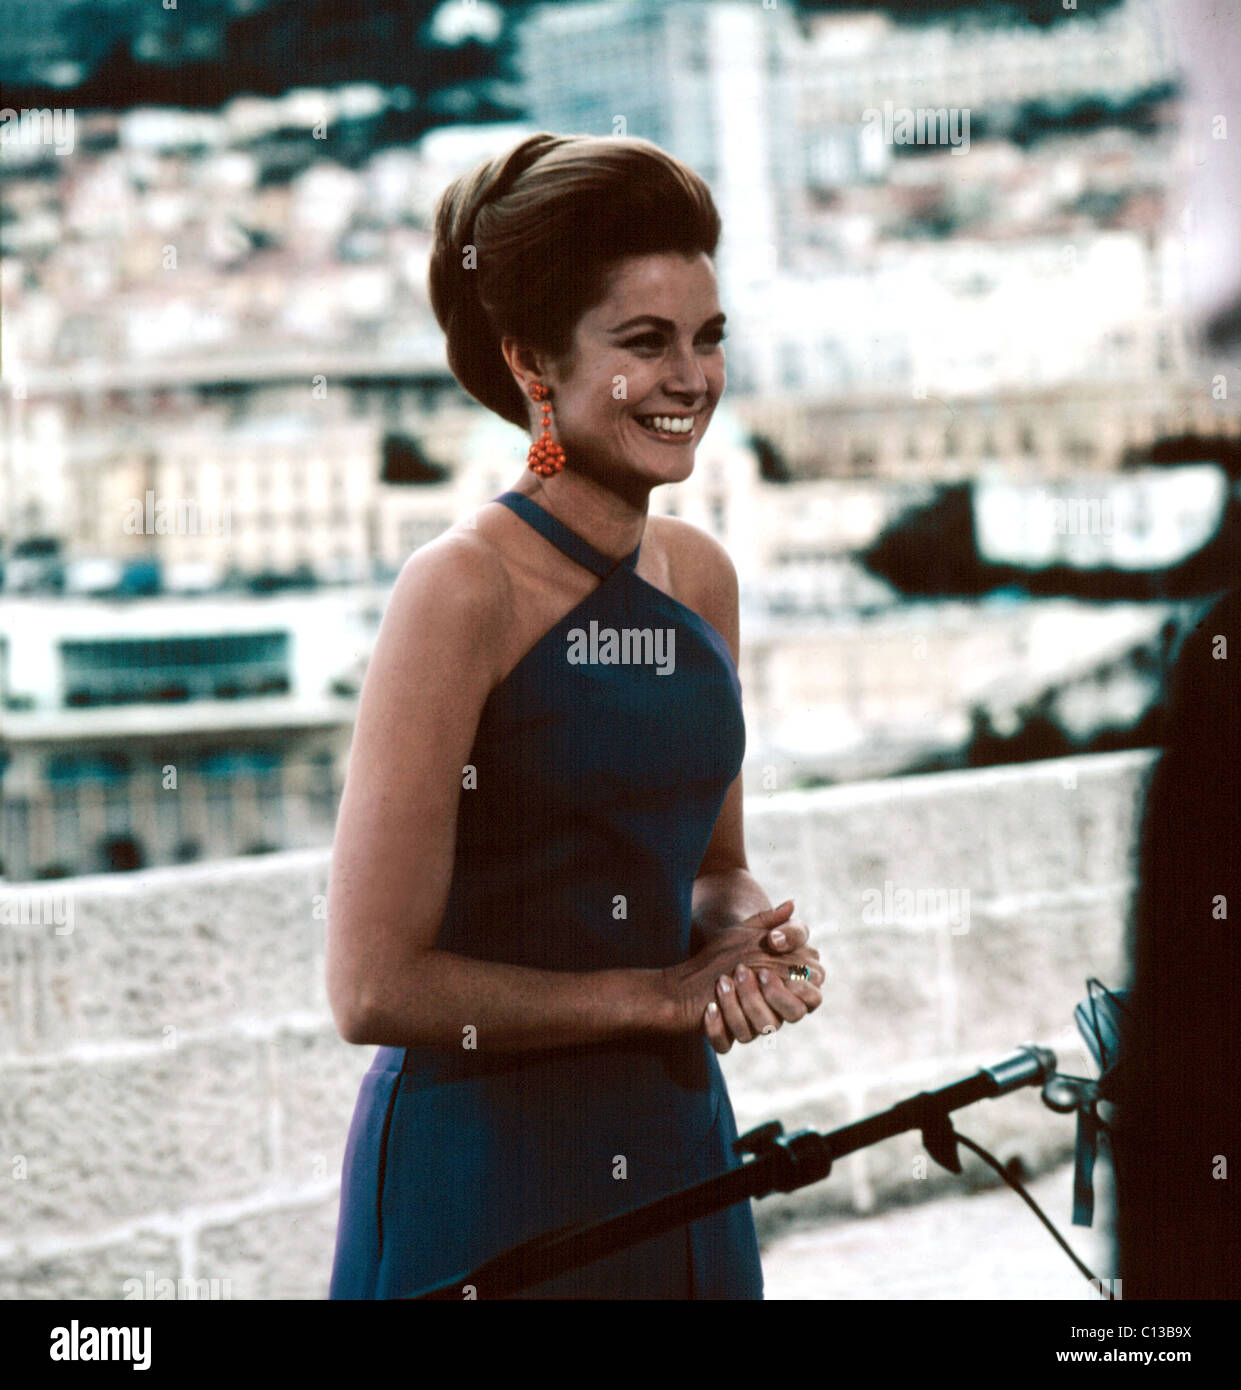 Princess Grace Kelly in Monaco in the 1960s. Stock Photo